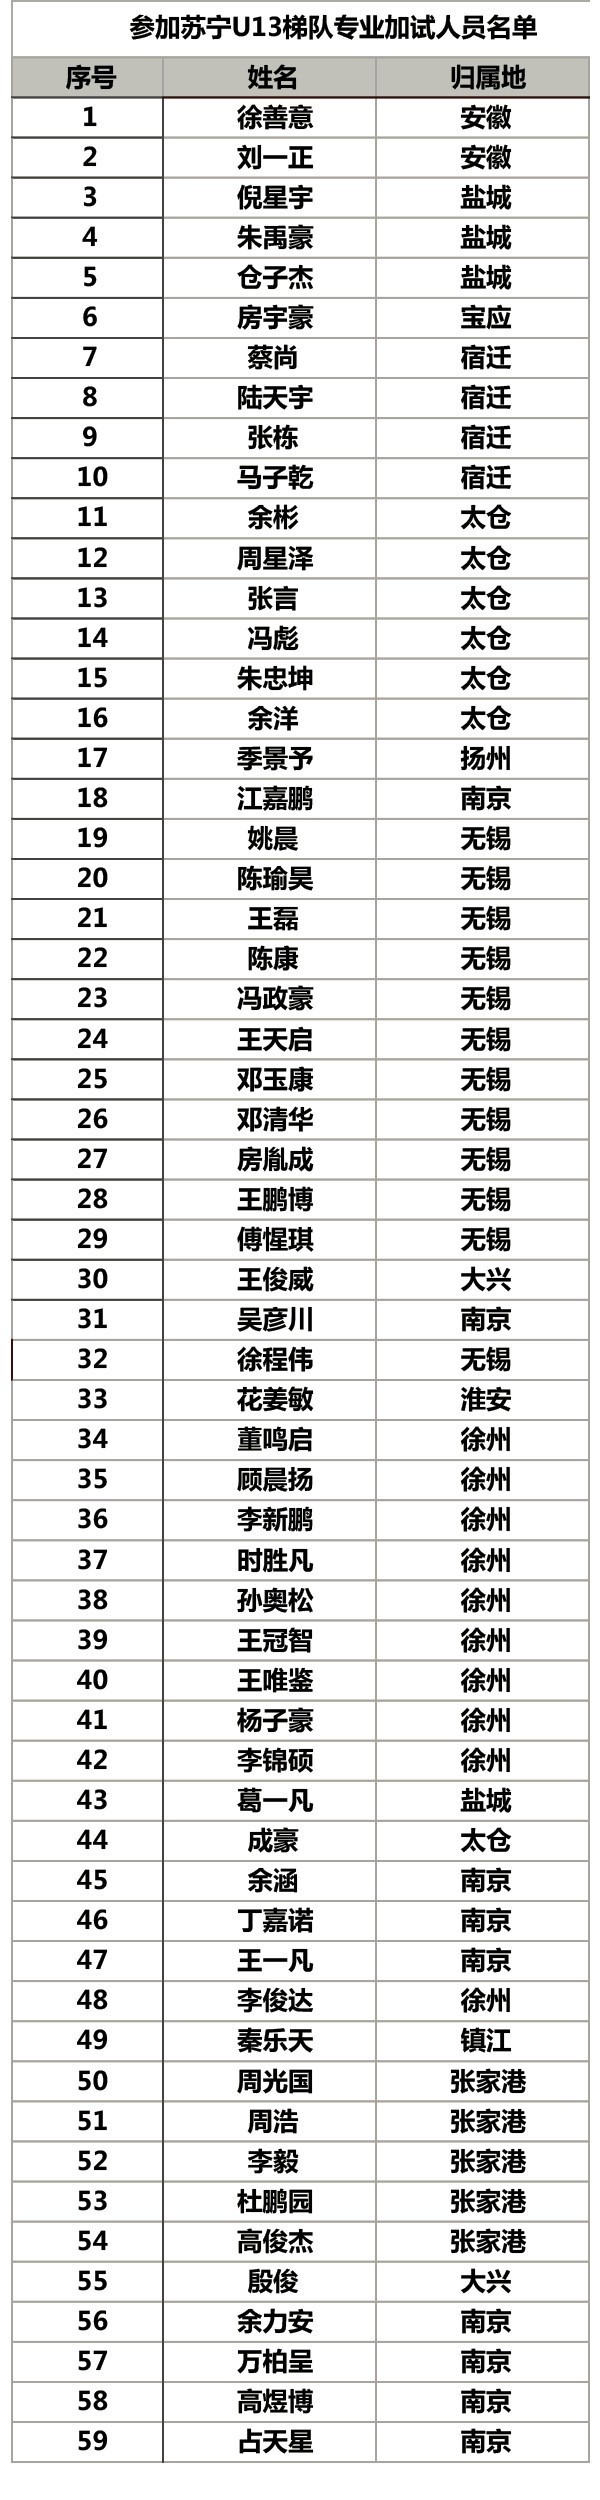 中国少年u14足球队名单_中国国青足球队名单_中国足球队名单